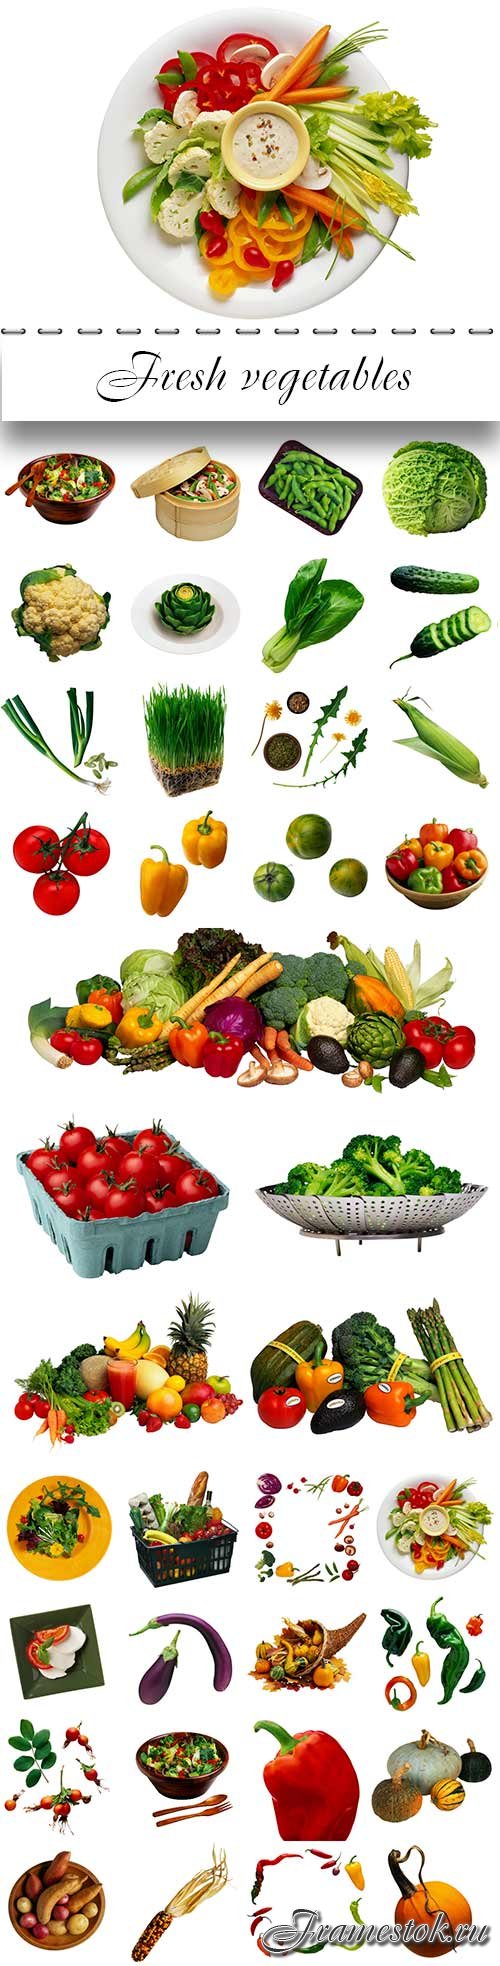 Fresh vegetables proper nutrition